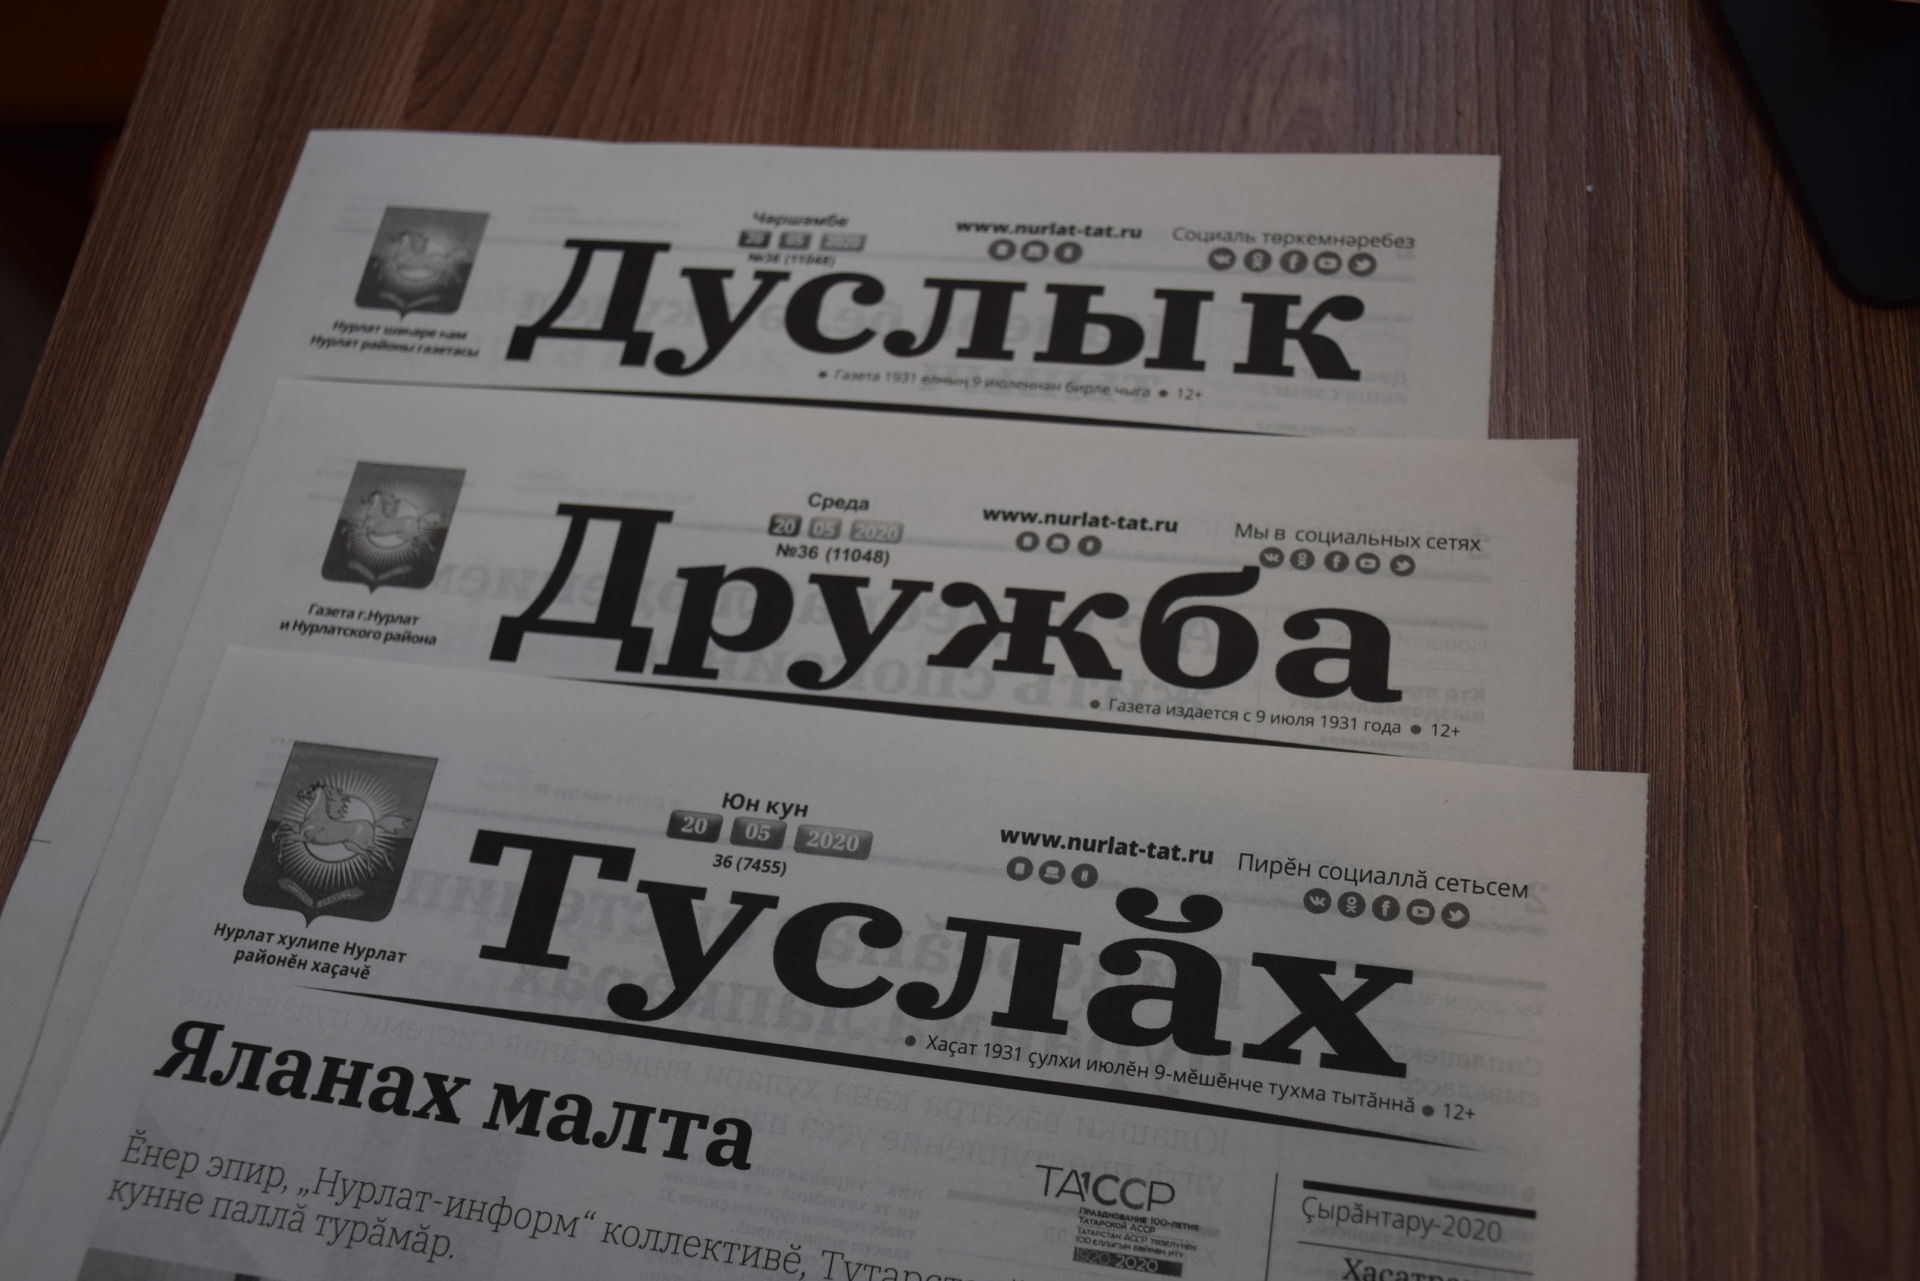 Призовая подписная декада на газету "Дружба" («Дуслык», «Туслах») проходит до 28 мая 2020 г.